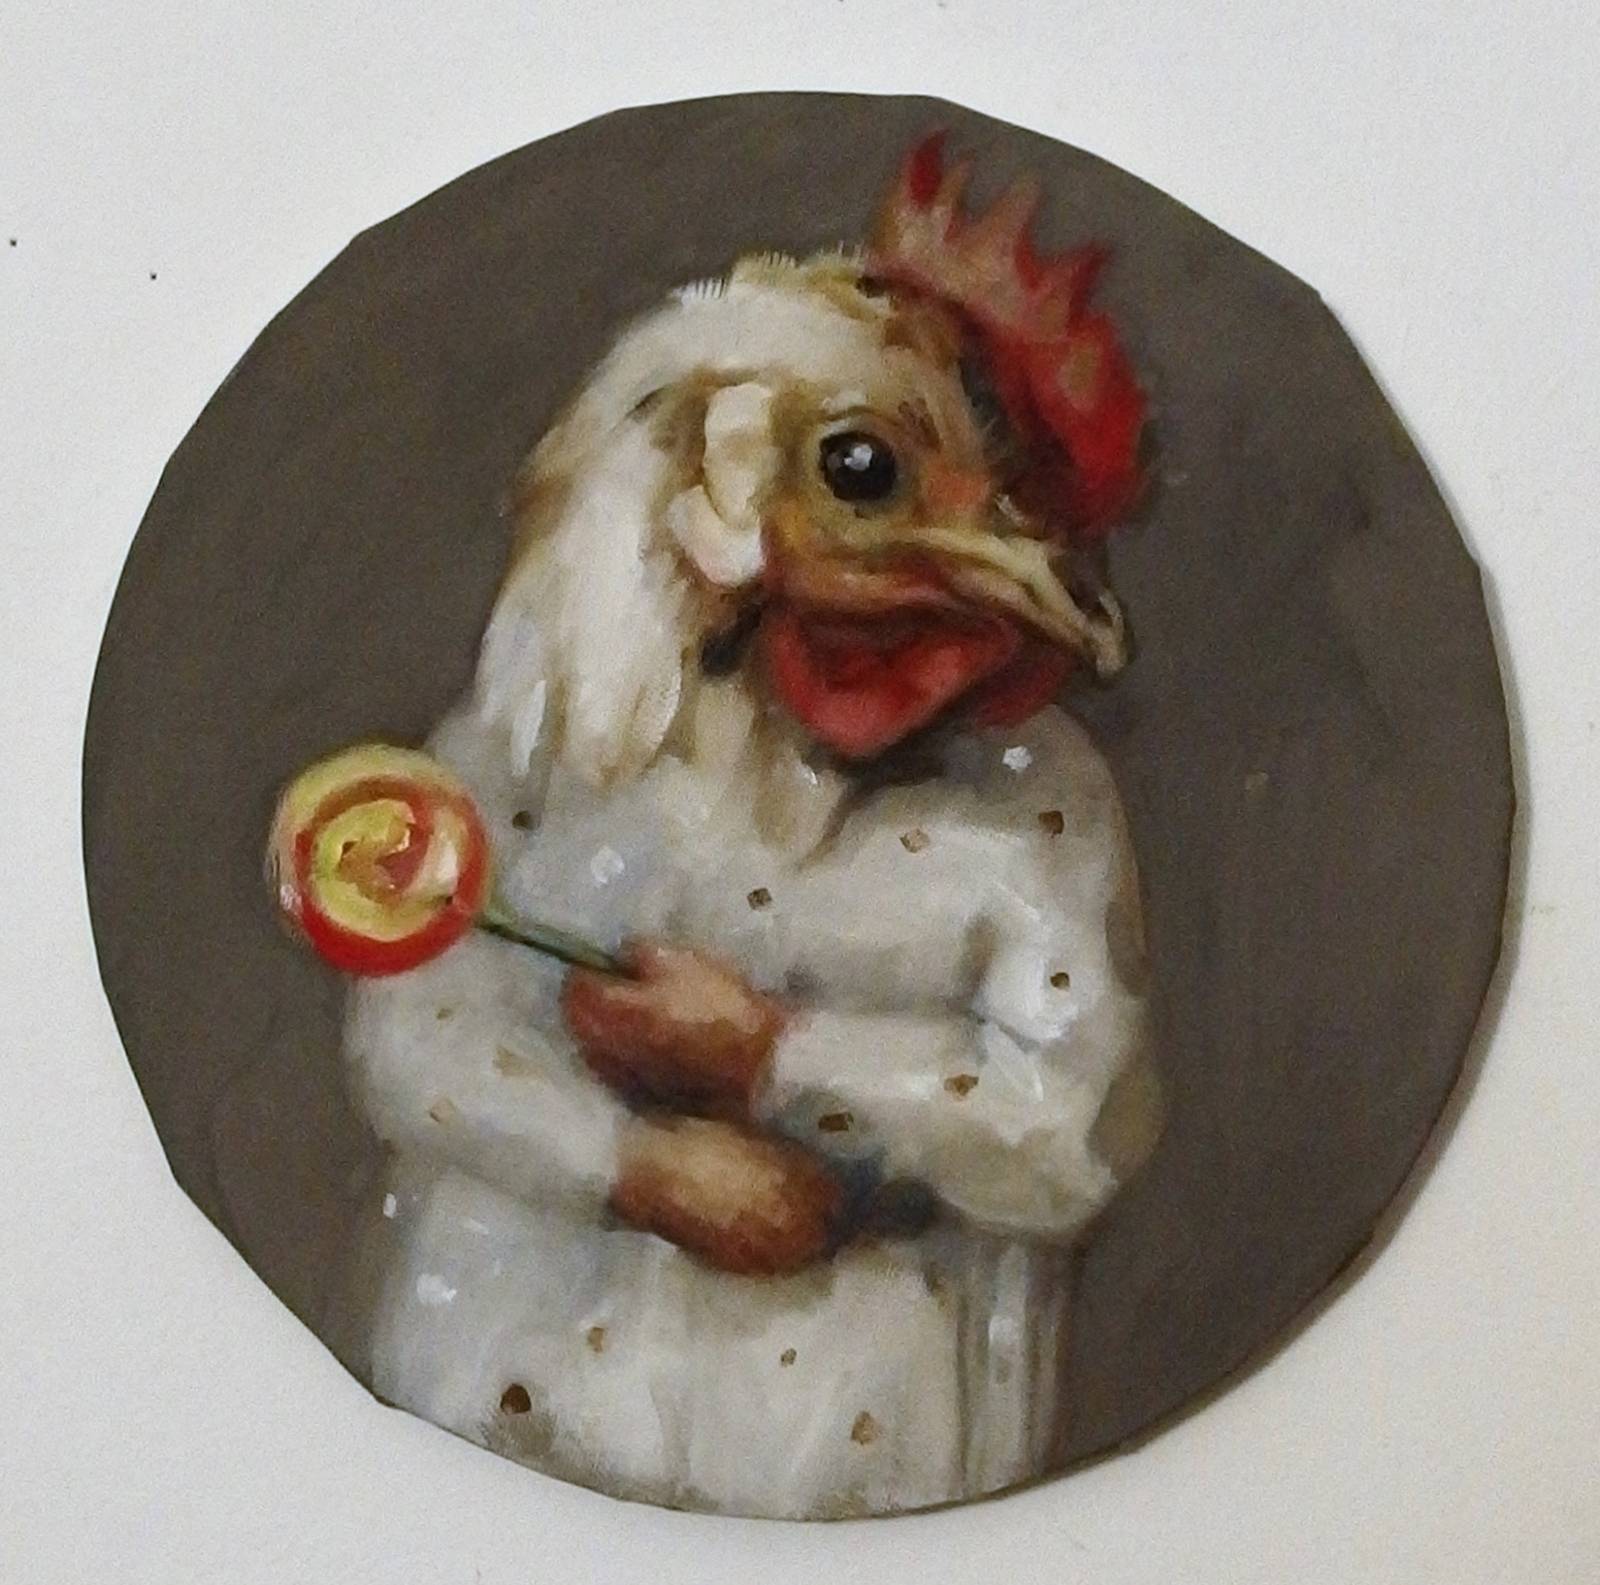 Zu sehen ist eine Malerei eines Menschen mit einem Hahnkopf, der einen Lolli in der Hand hält.